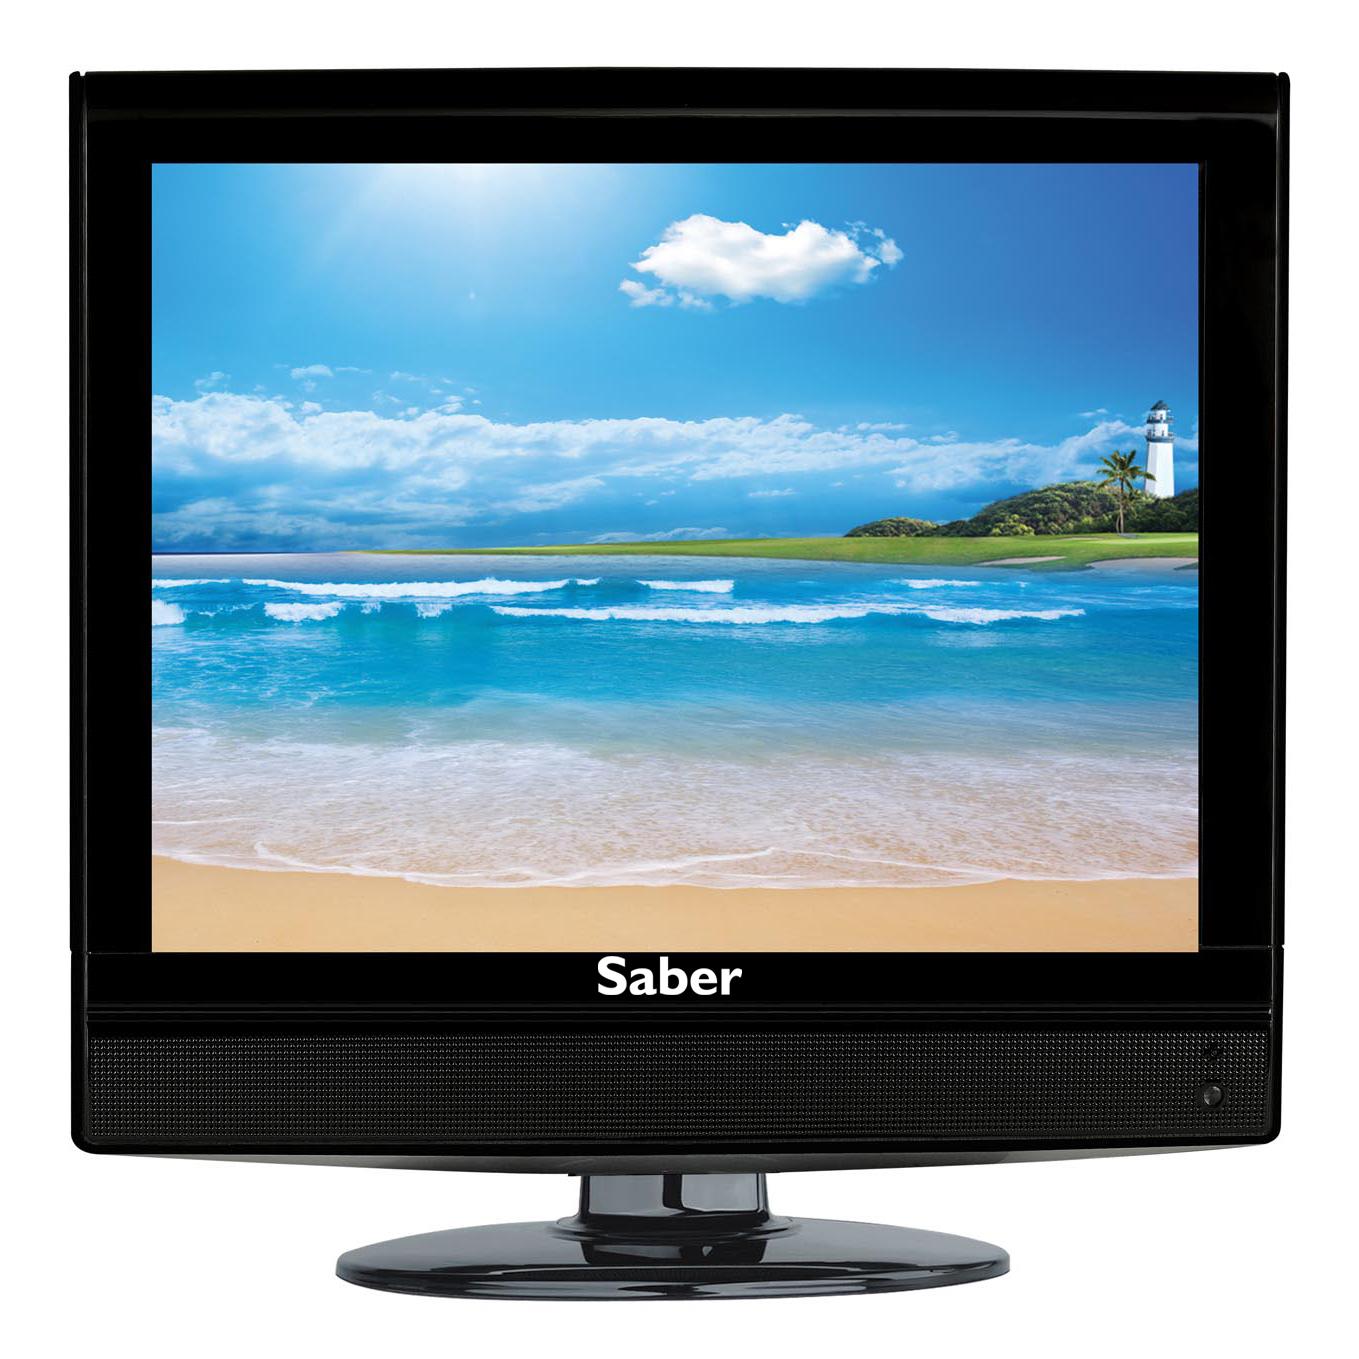 ΤΗΛΕΟΡΑΣΗ LCD 15" TV Ts-1501 TFT LCD Color DVB-T Mpeg4 H.264 VGA